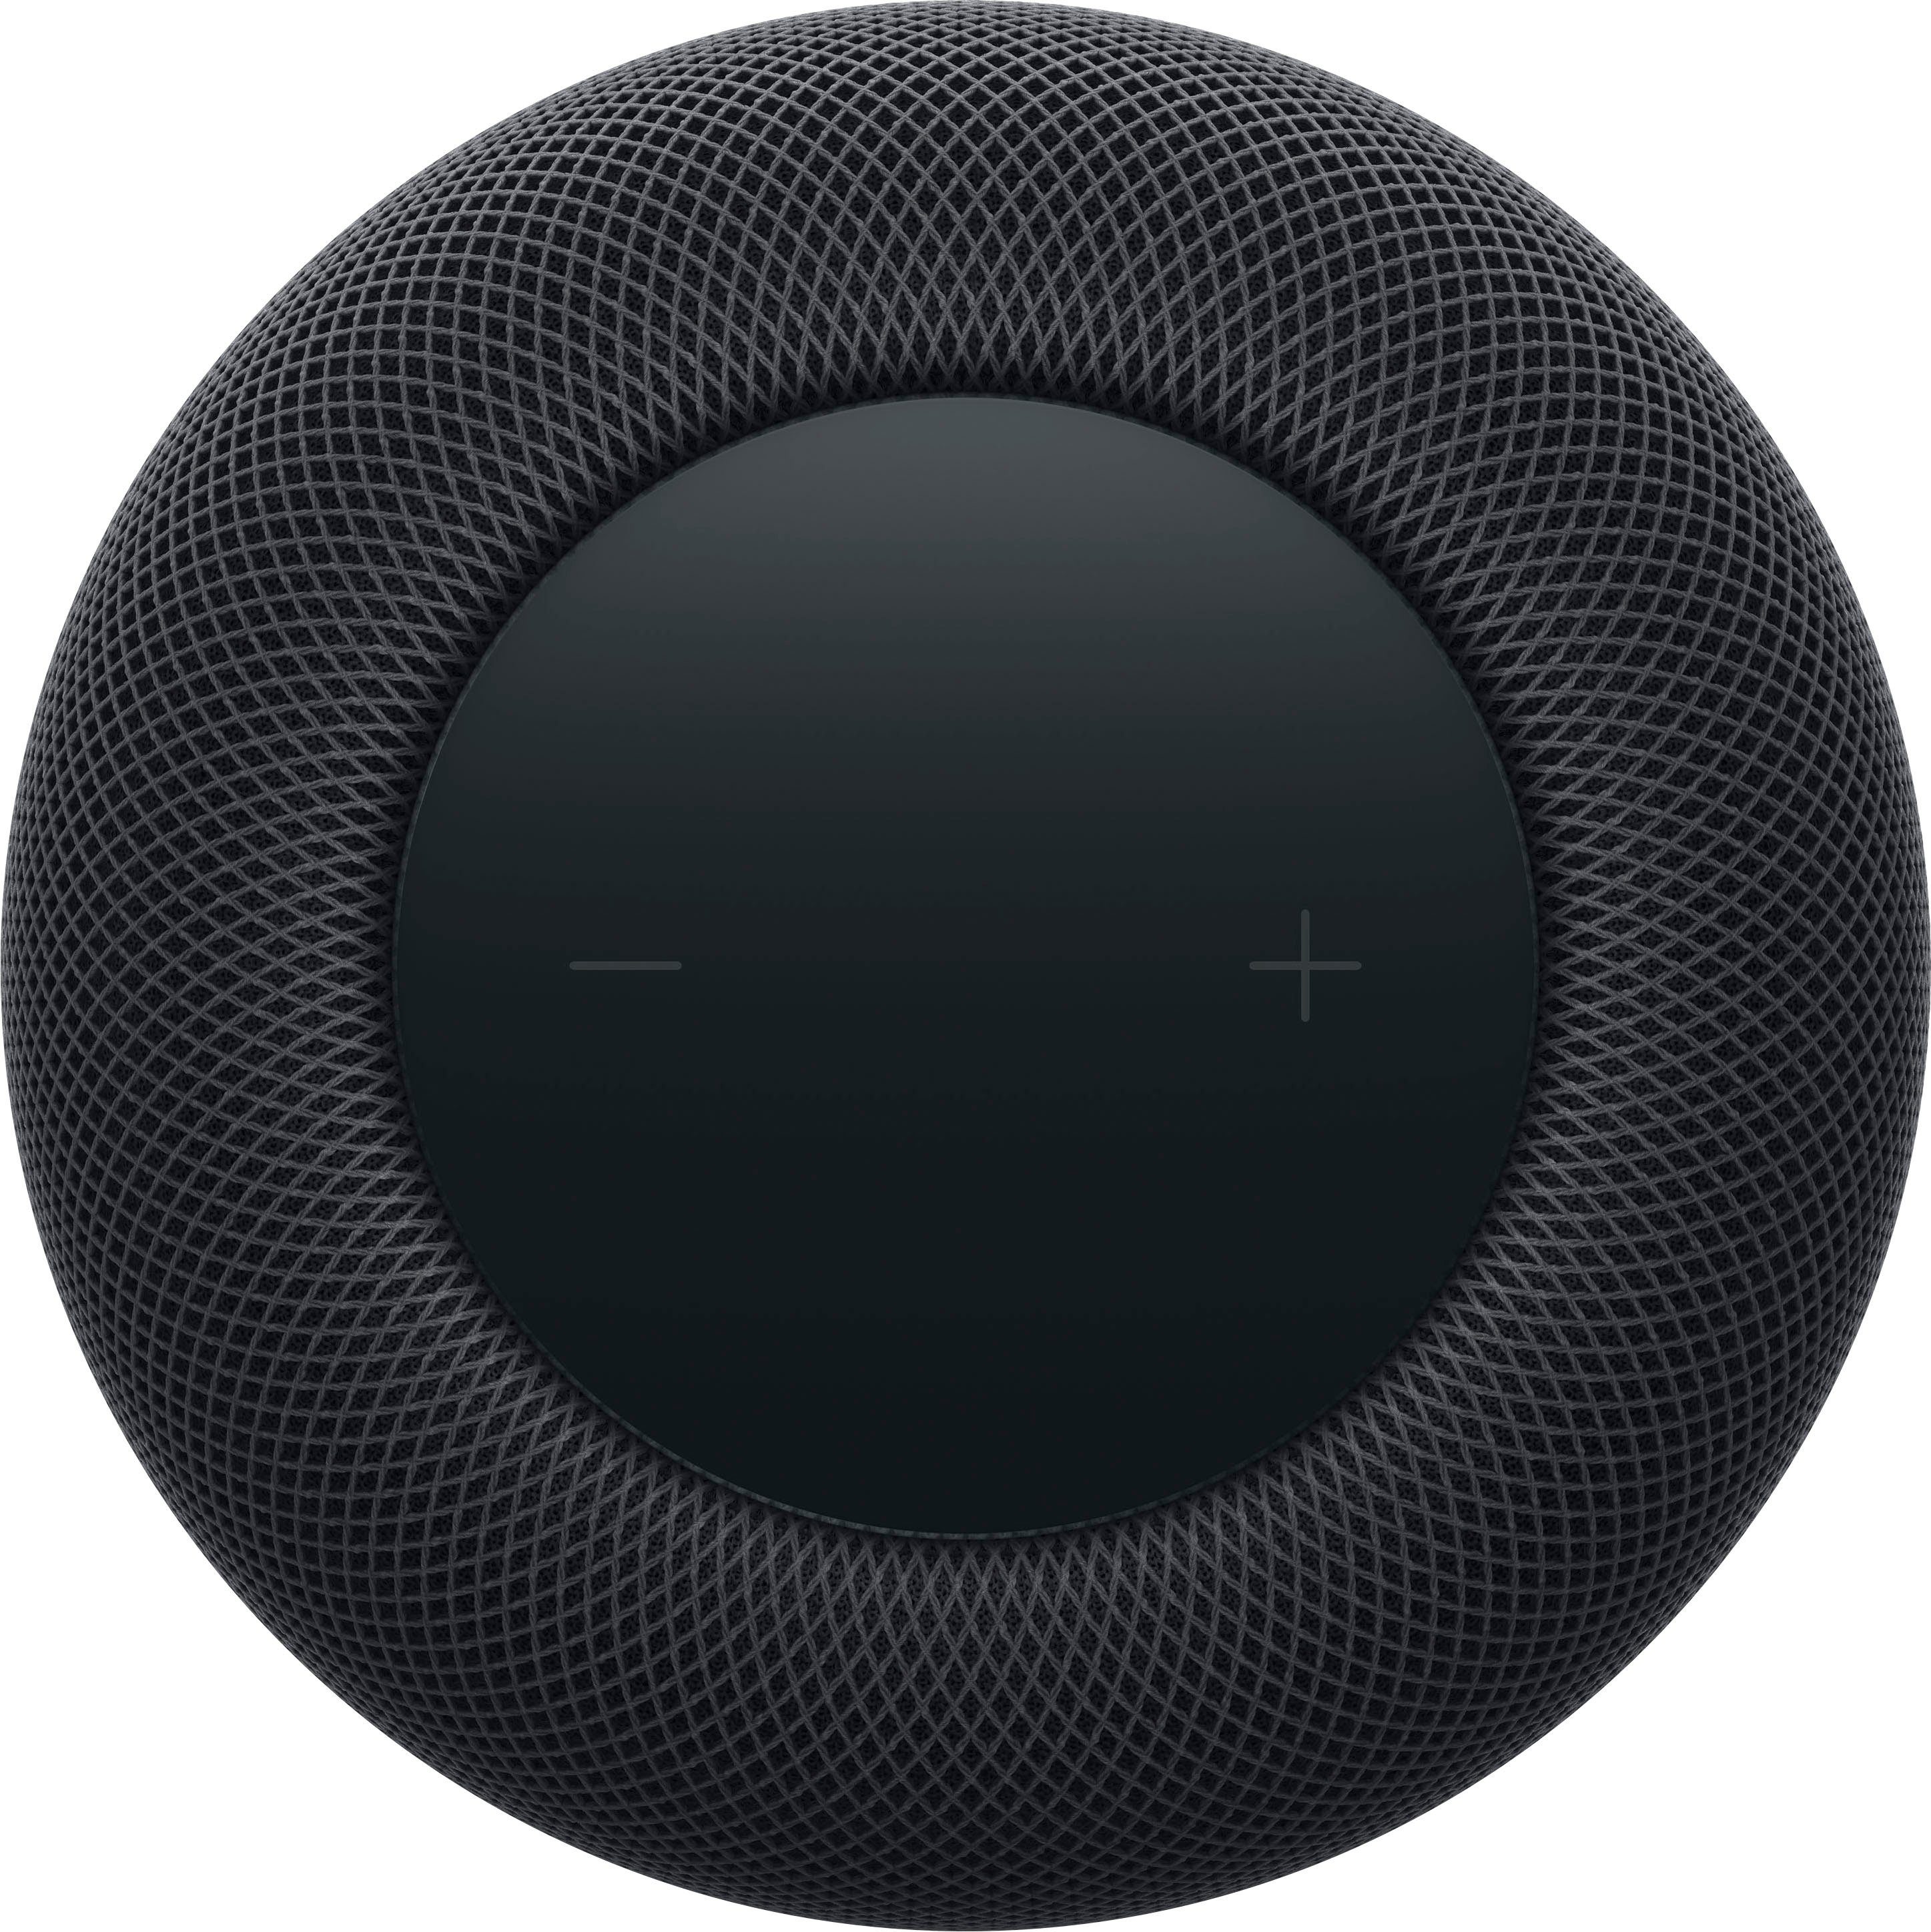 Apple HomePod 2023) 2. Gen. (Bluetooth, Lautsprecher midnight WLAN